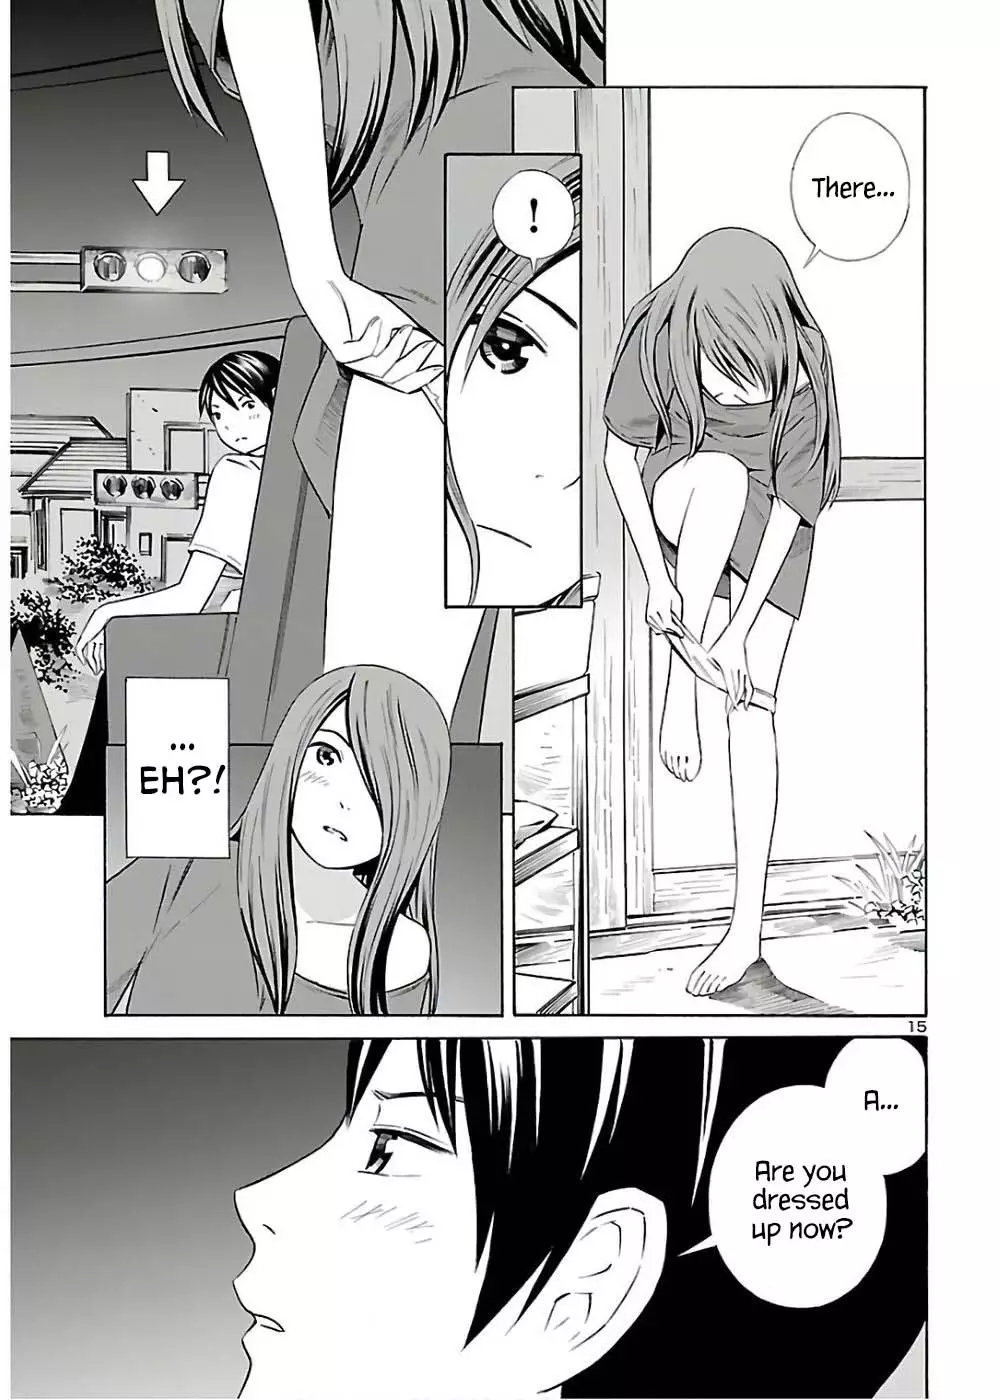 24-Ku No Hanako-San - 10 page 40